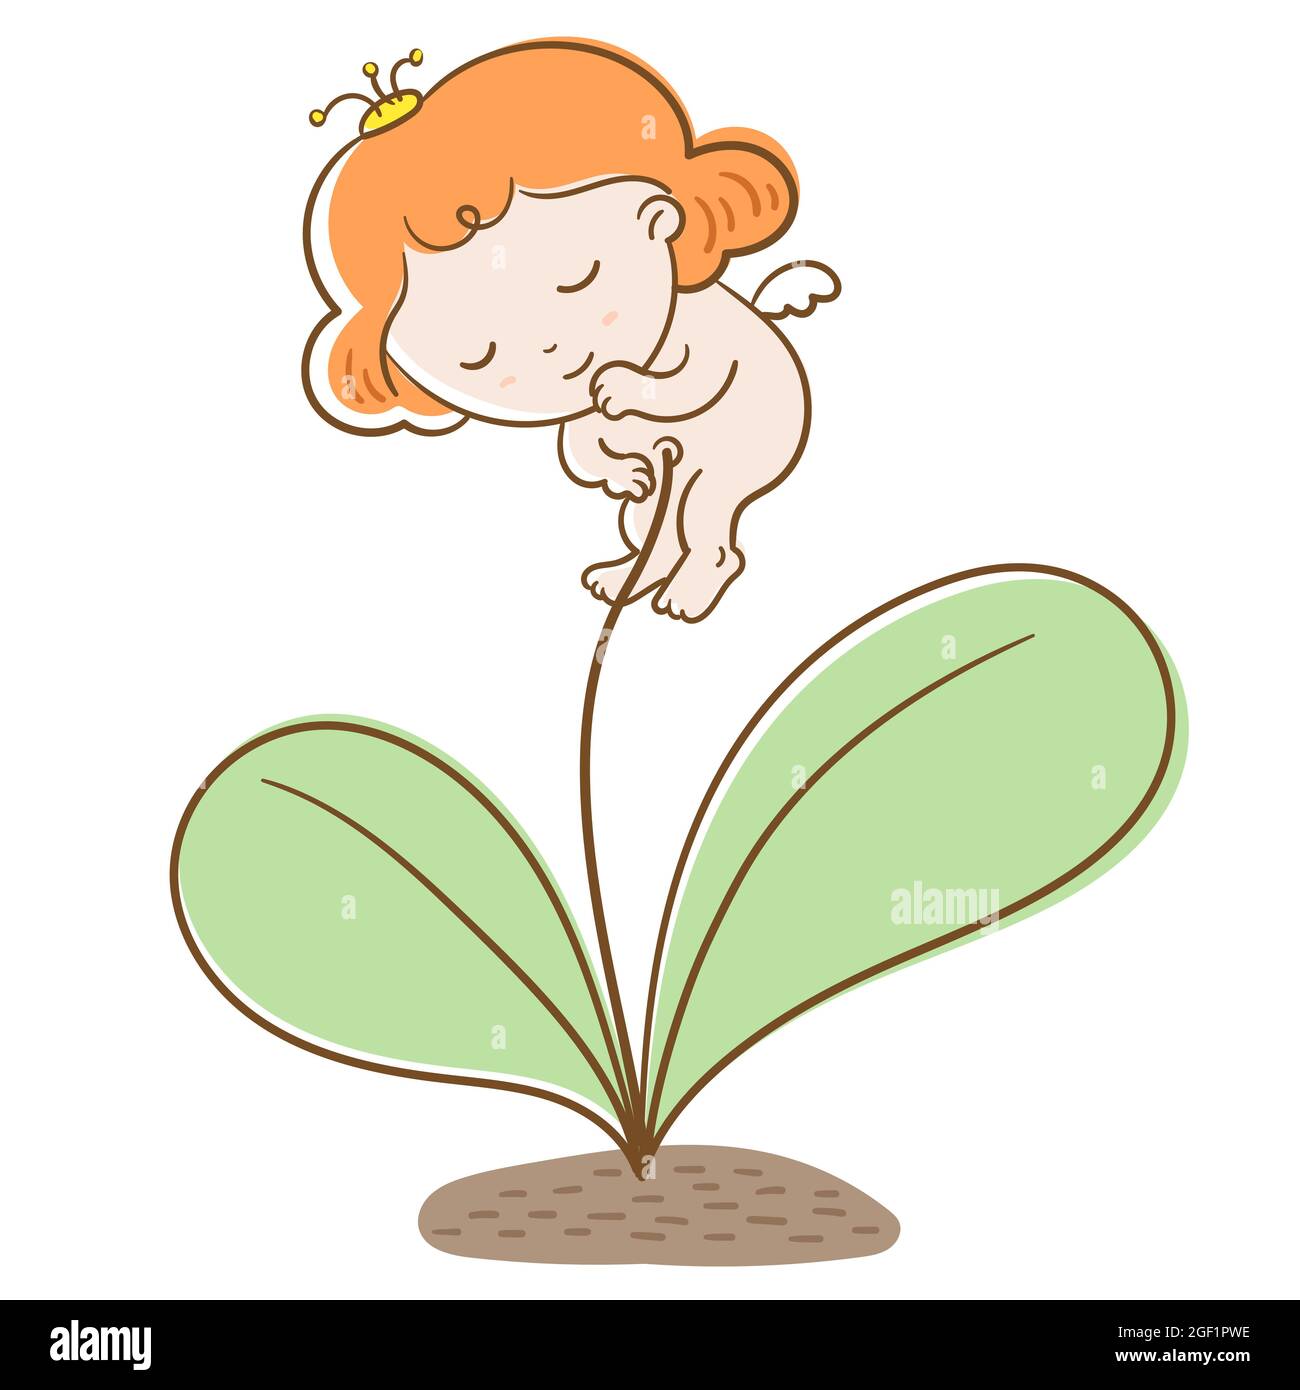 Babyblume. Ein niedliches Blumenbaby wuchs auf dem Boden auf. Vektorgrafik flach. Stock Vektor